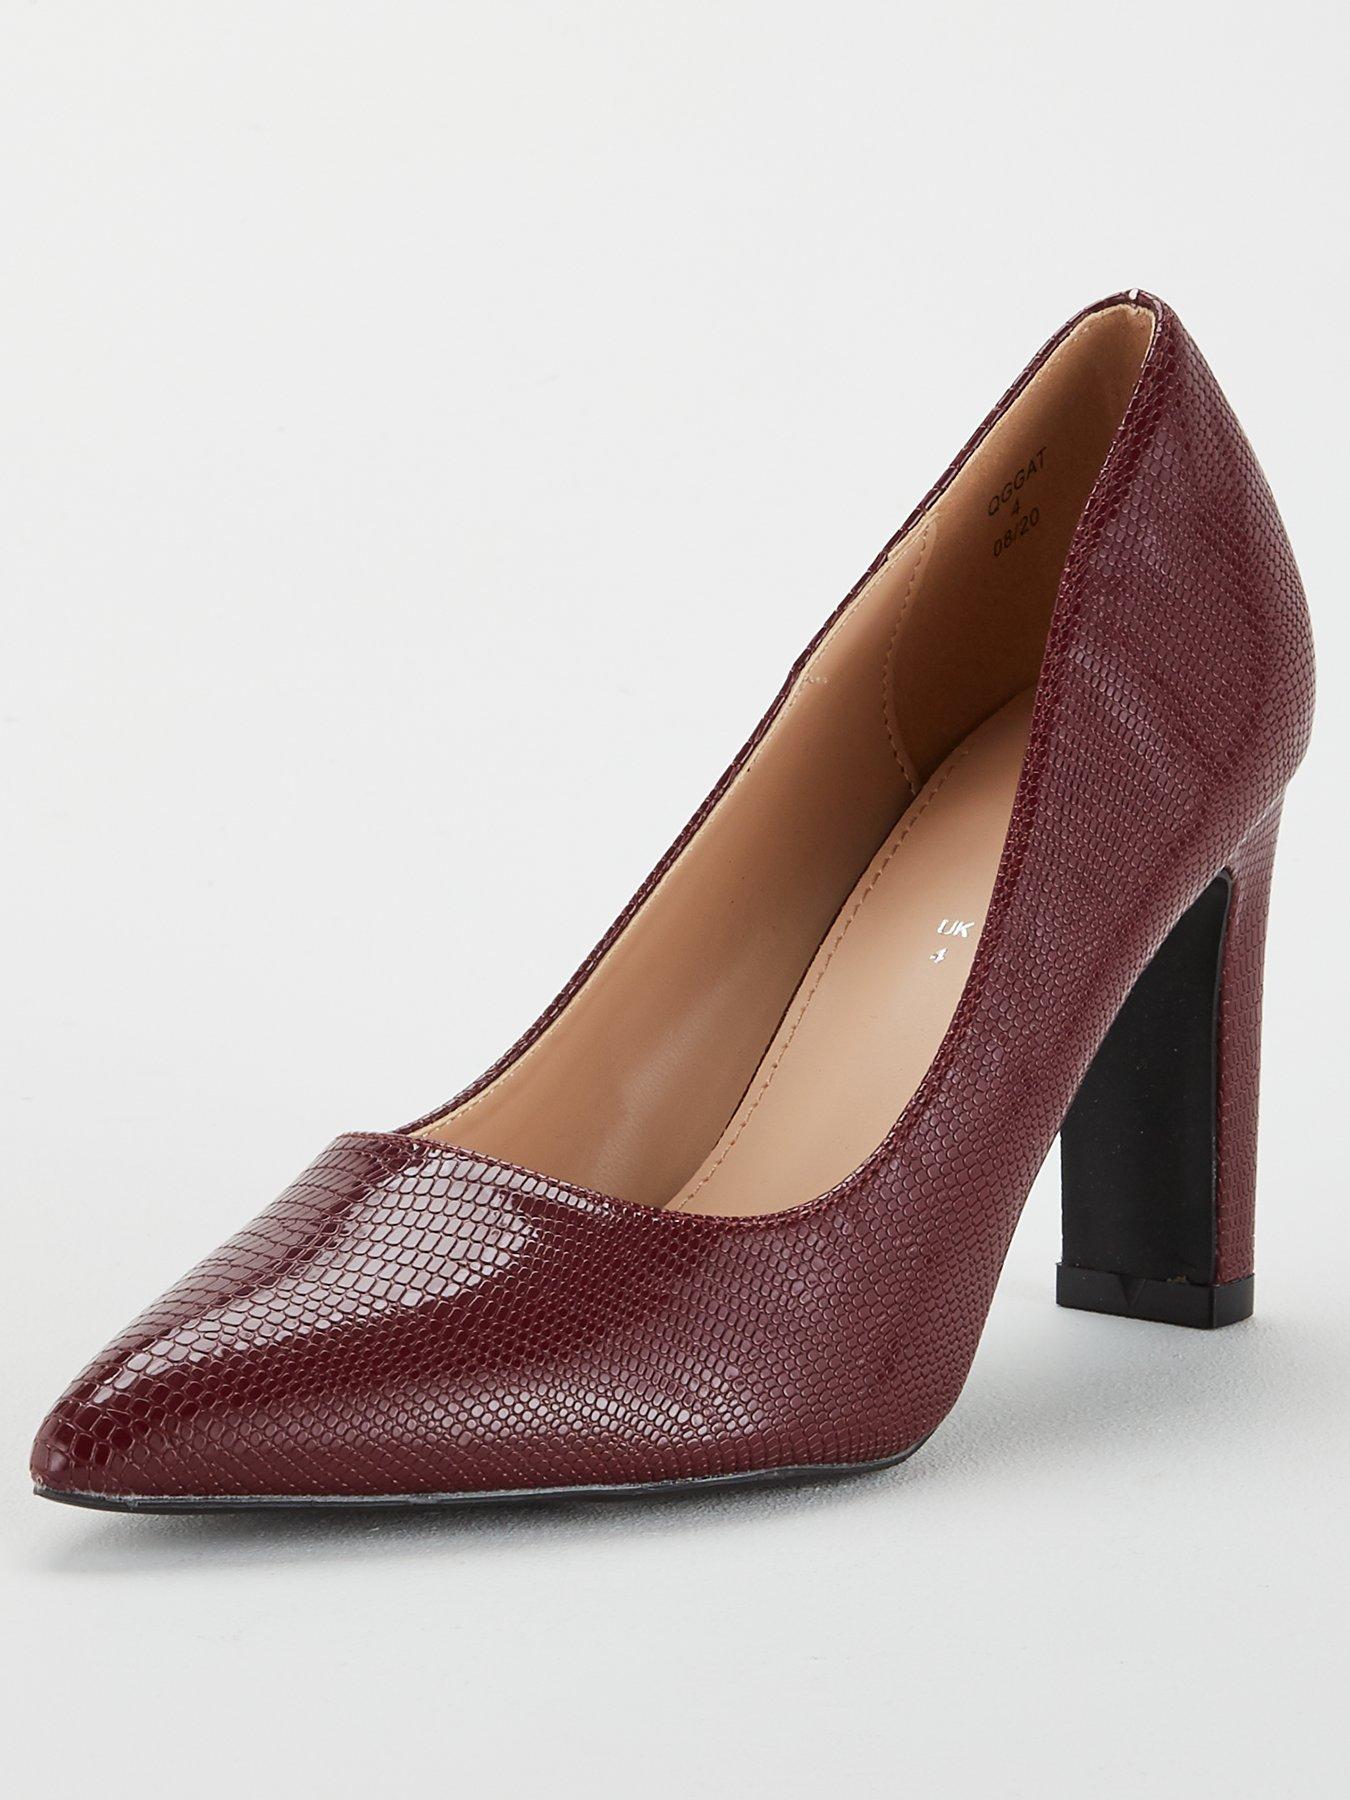 burgundy court shoes uk